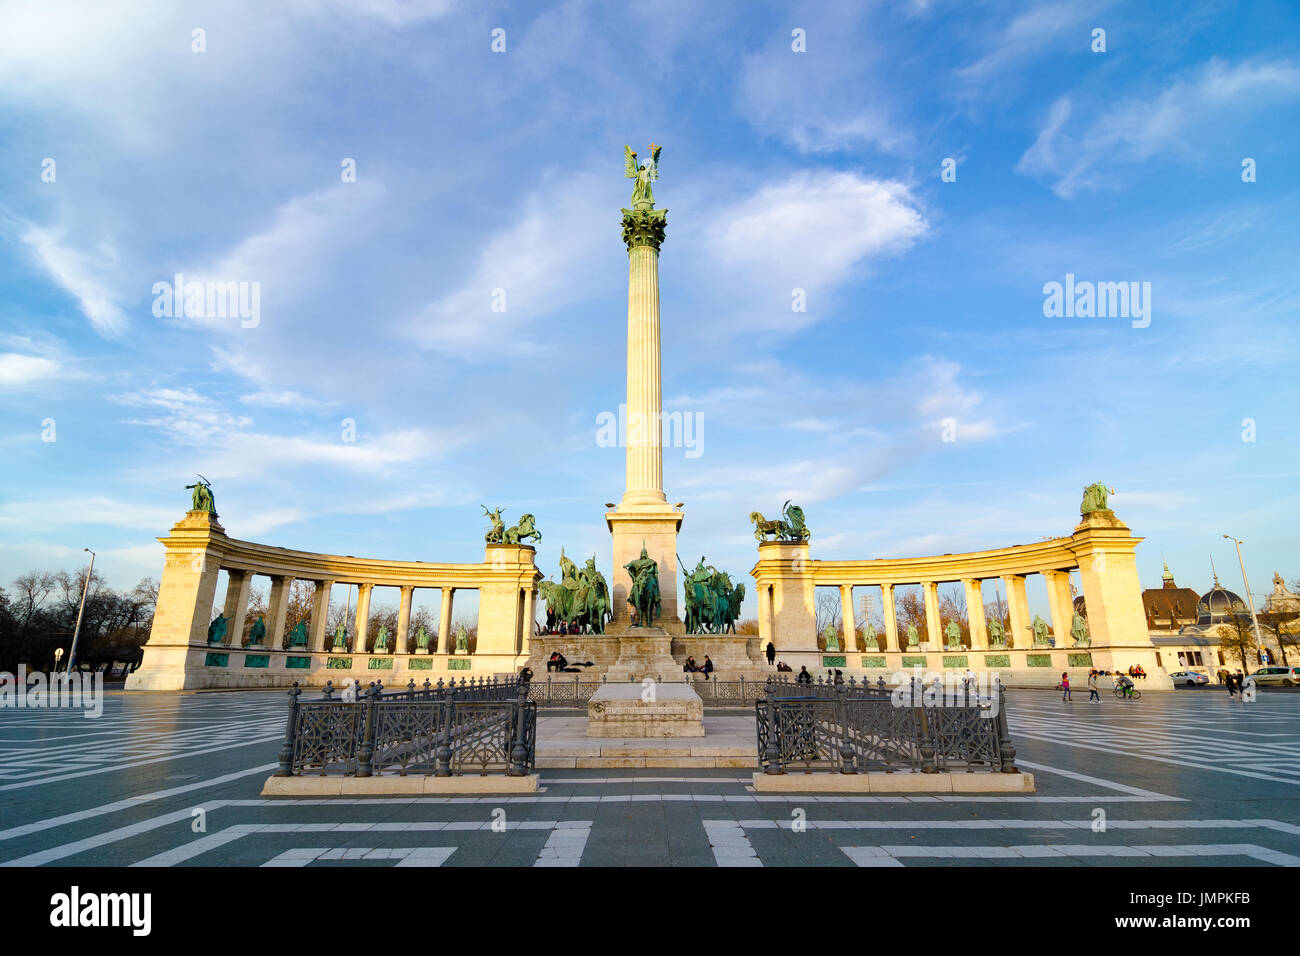 Milleniumsdenkmal auf dem Heldenplatz - Hosok Tere gehört zu den wichtigsten Plätzen in Budapest, Ungarn. Stockfoto